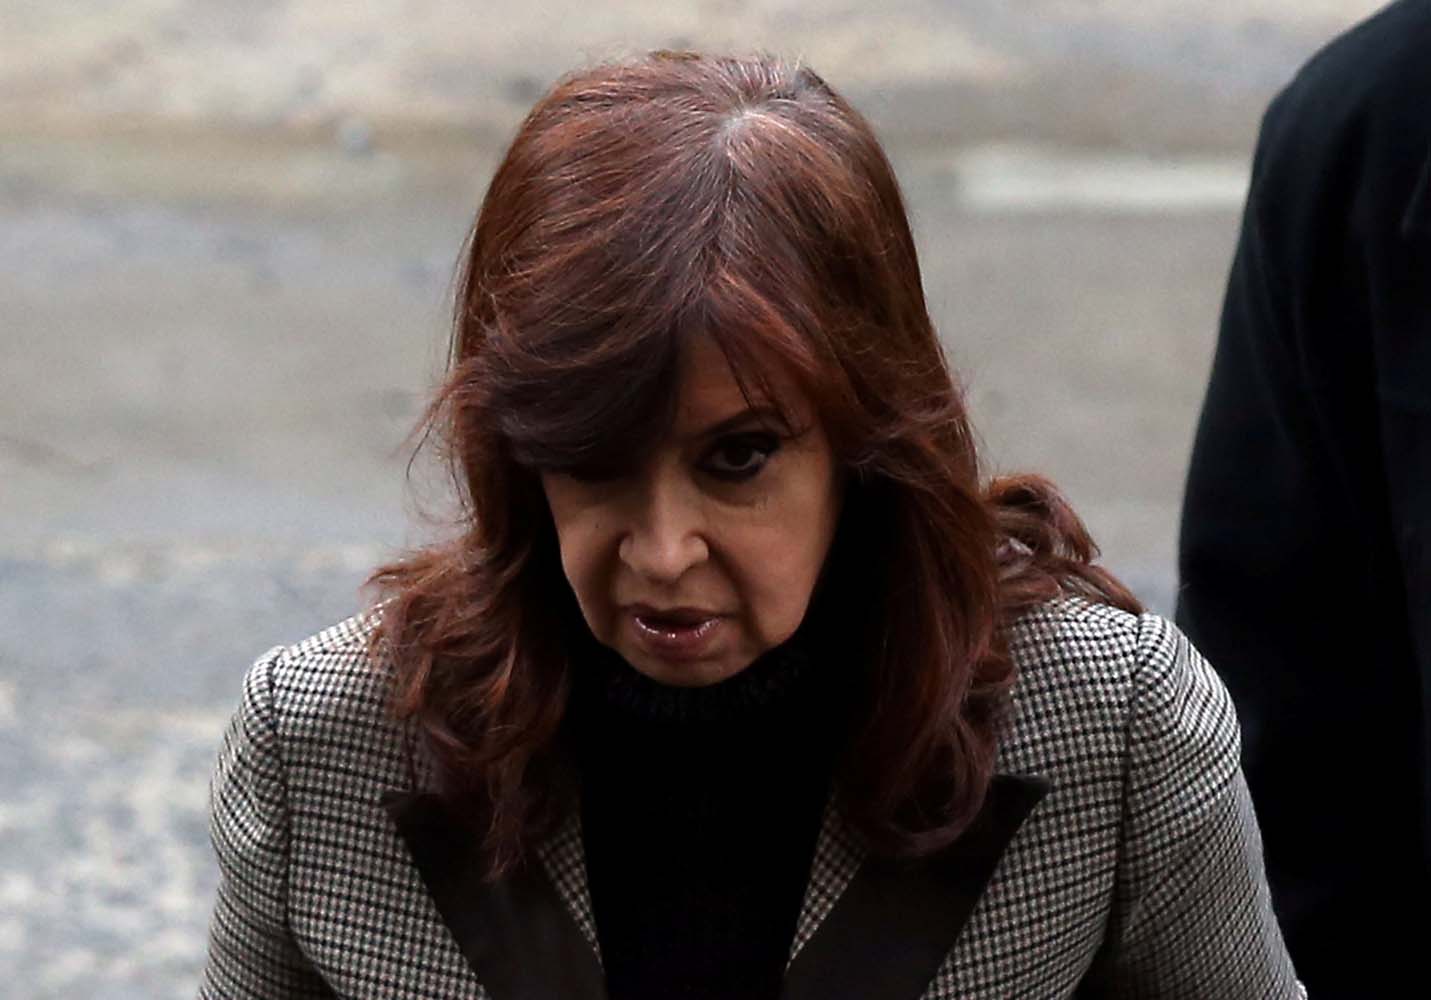 Juicio a Cristina Fernández de Kirchner: el perjuicio fue de más de 38 millones de dólares